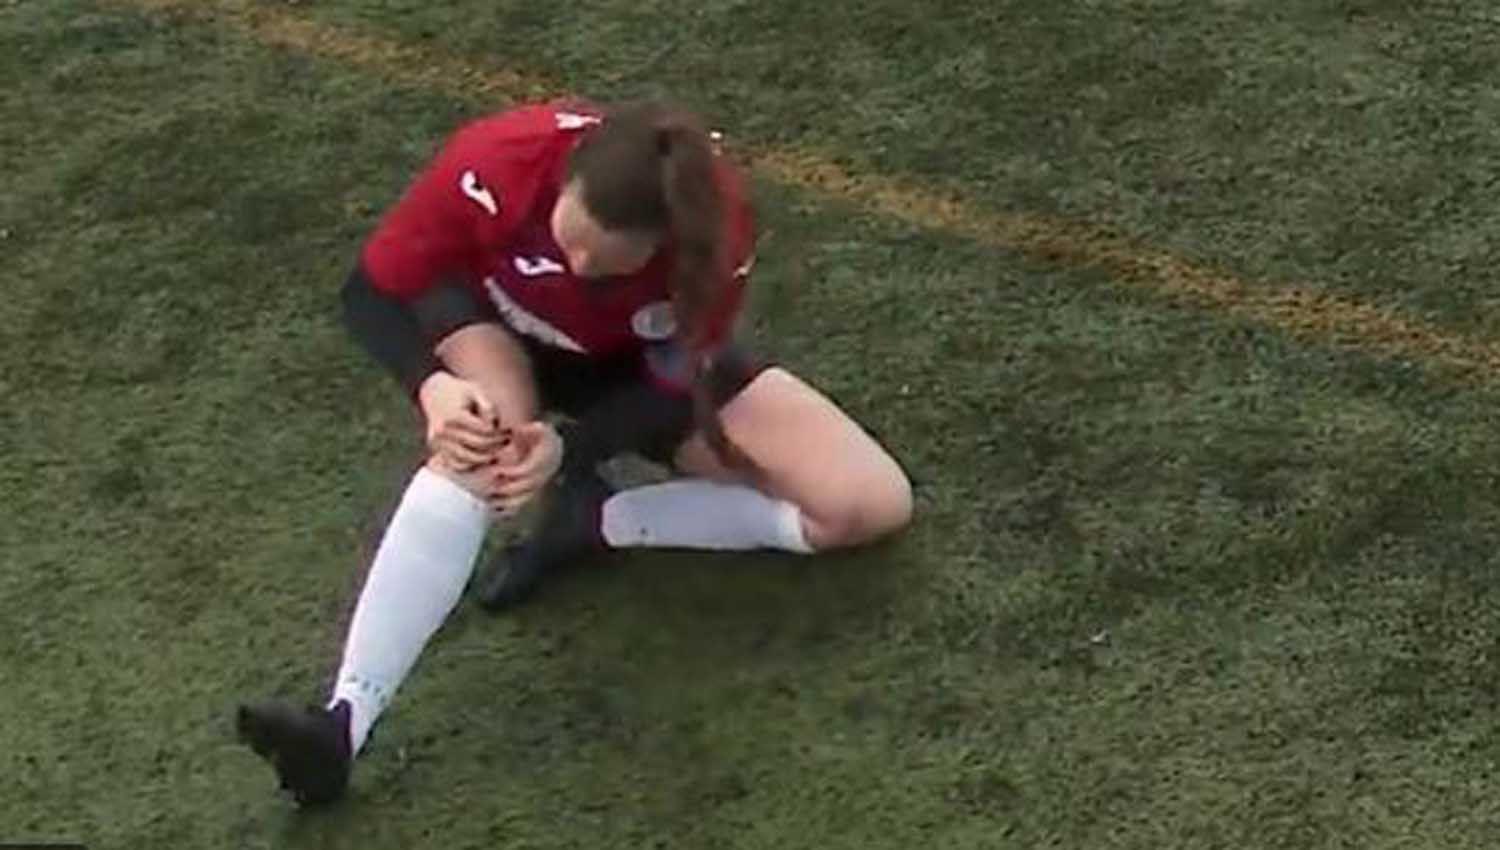 VIDEO  Escalofriante decisioacuten de una jugadora que se dislocoacute la rodilla